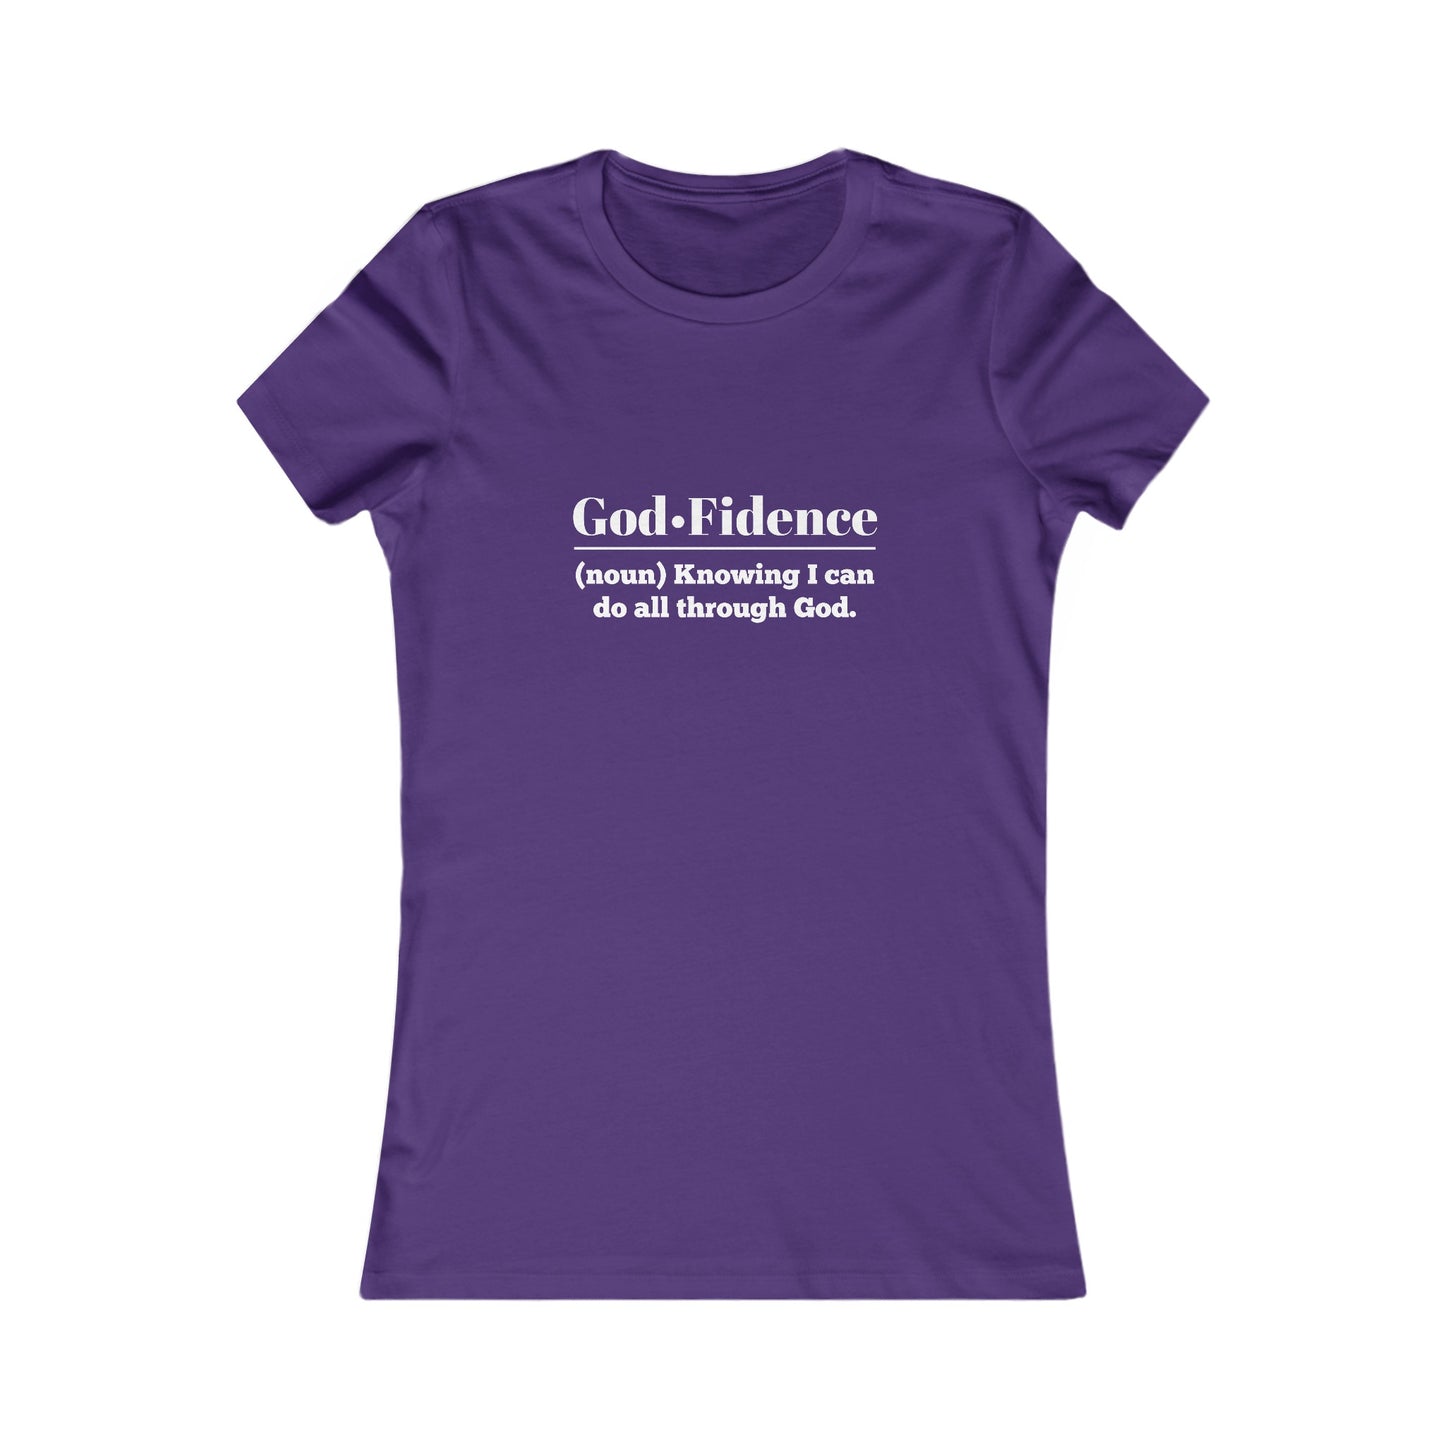 God-fidence Women's Fitted Tshirt (White Logo)